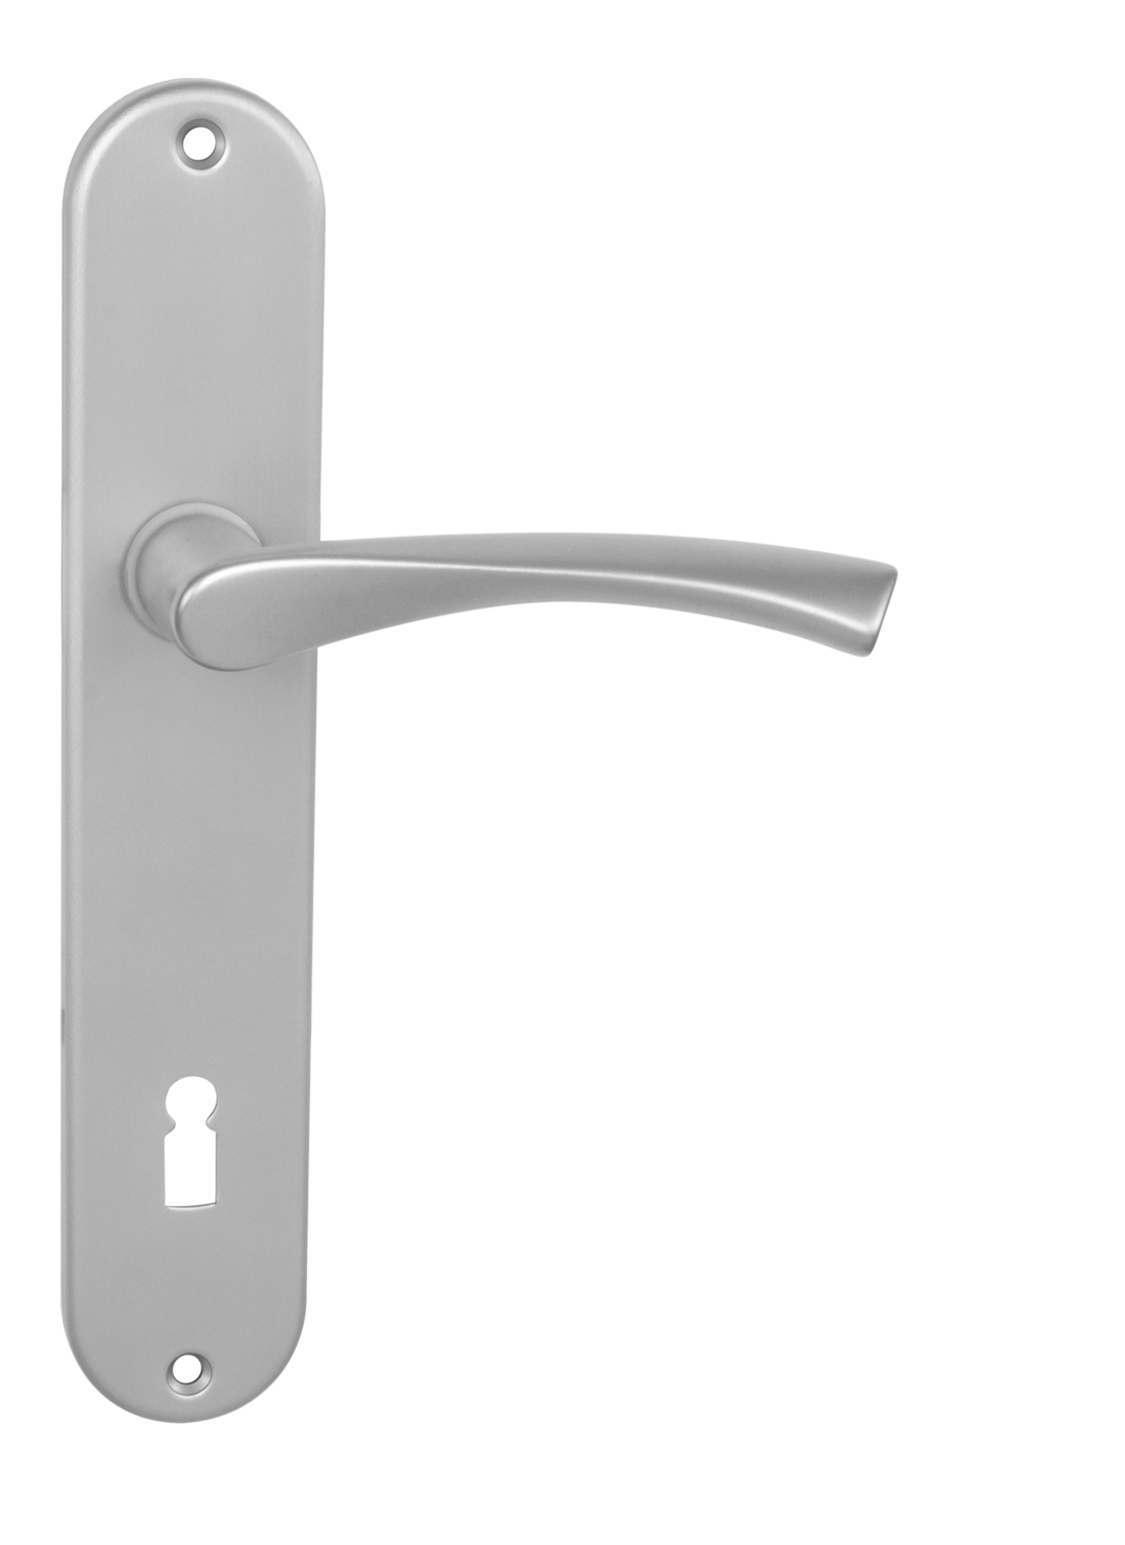 BA - TORNADO - SO WC kľúč, 72 mm, kľučka/kľučka